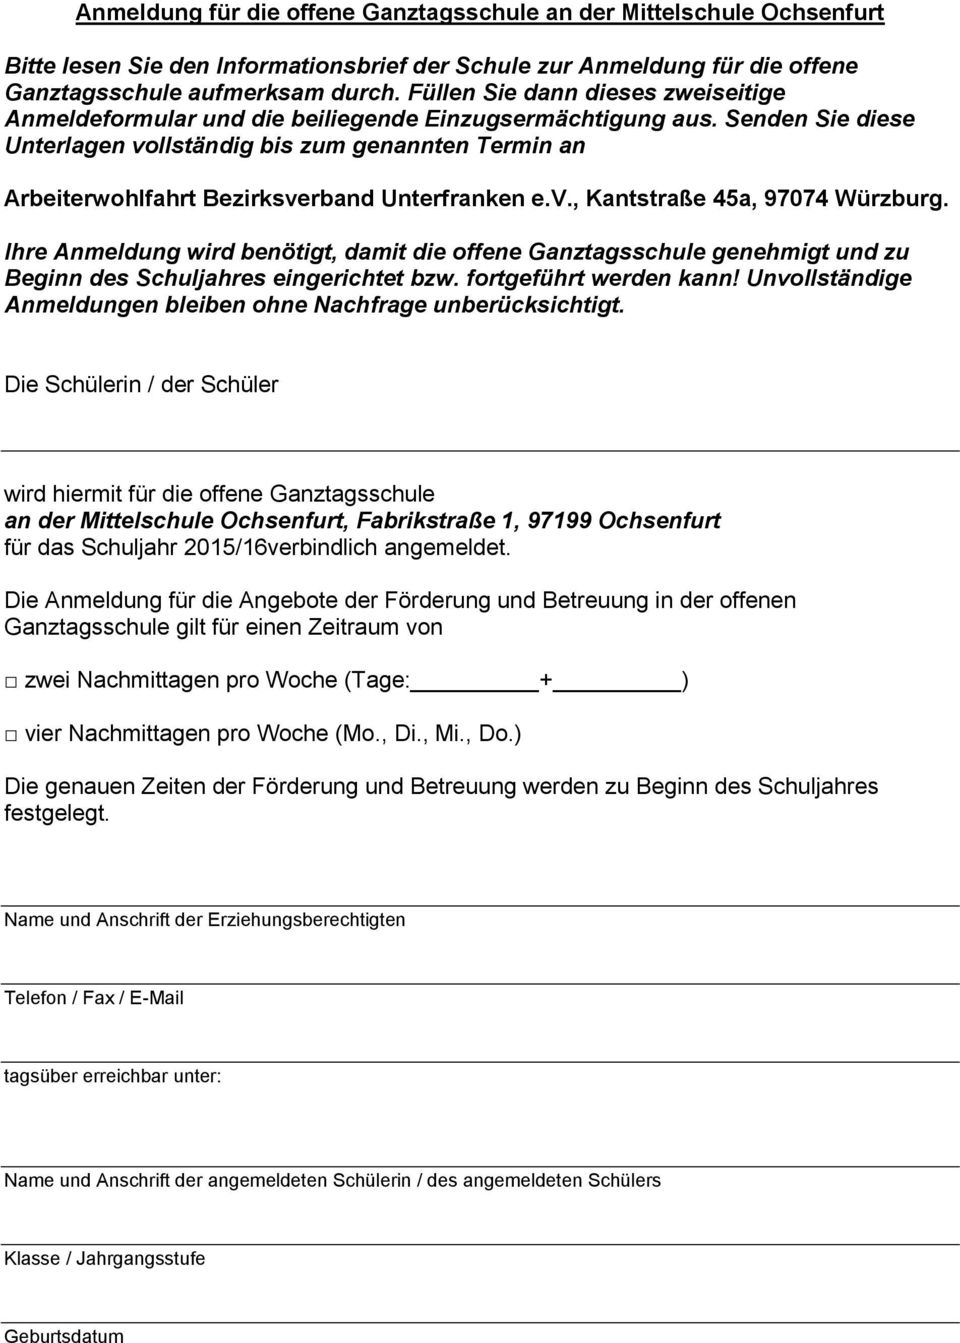 Senden Sie diese Unterlagen vollständig bis zum genannten Termin an Arbeiterwohlfahrt Bezirksverband Unterfranken e.v., Kantstraße 45a, 97074 Würzburg.